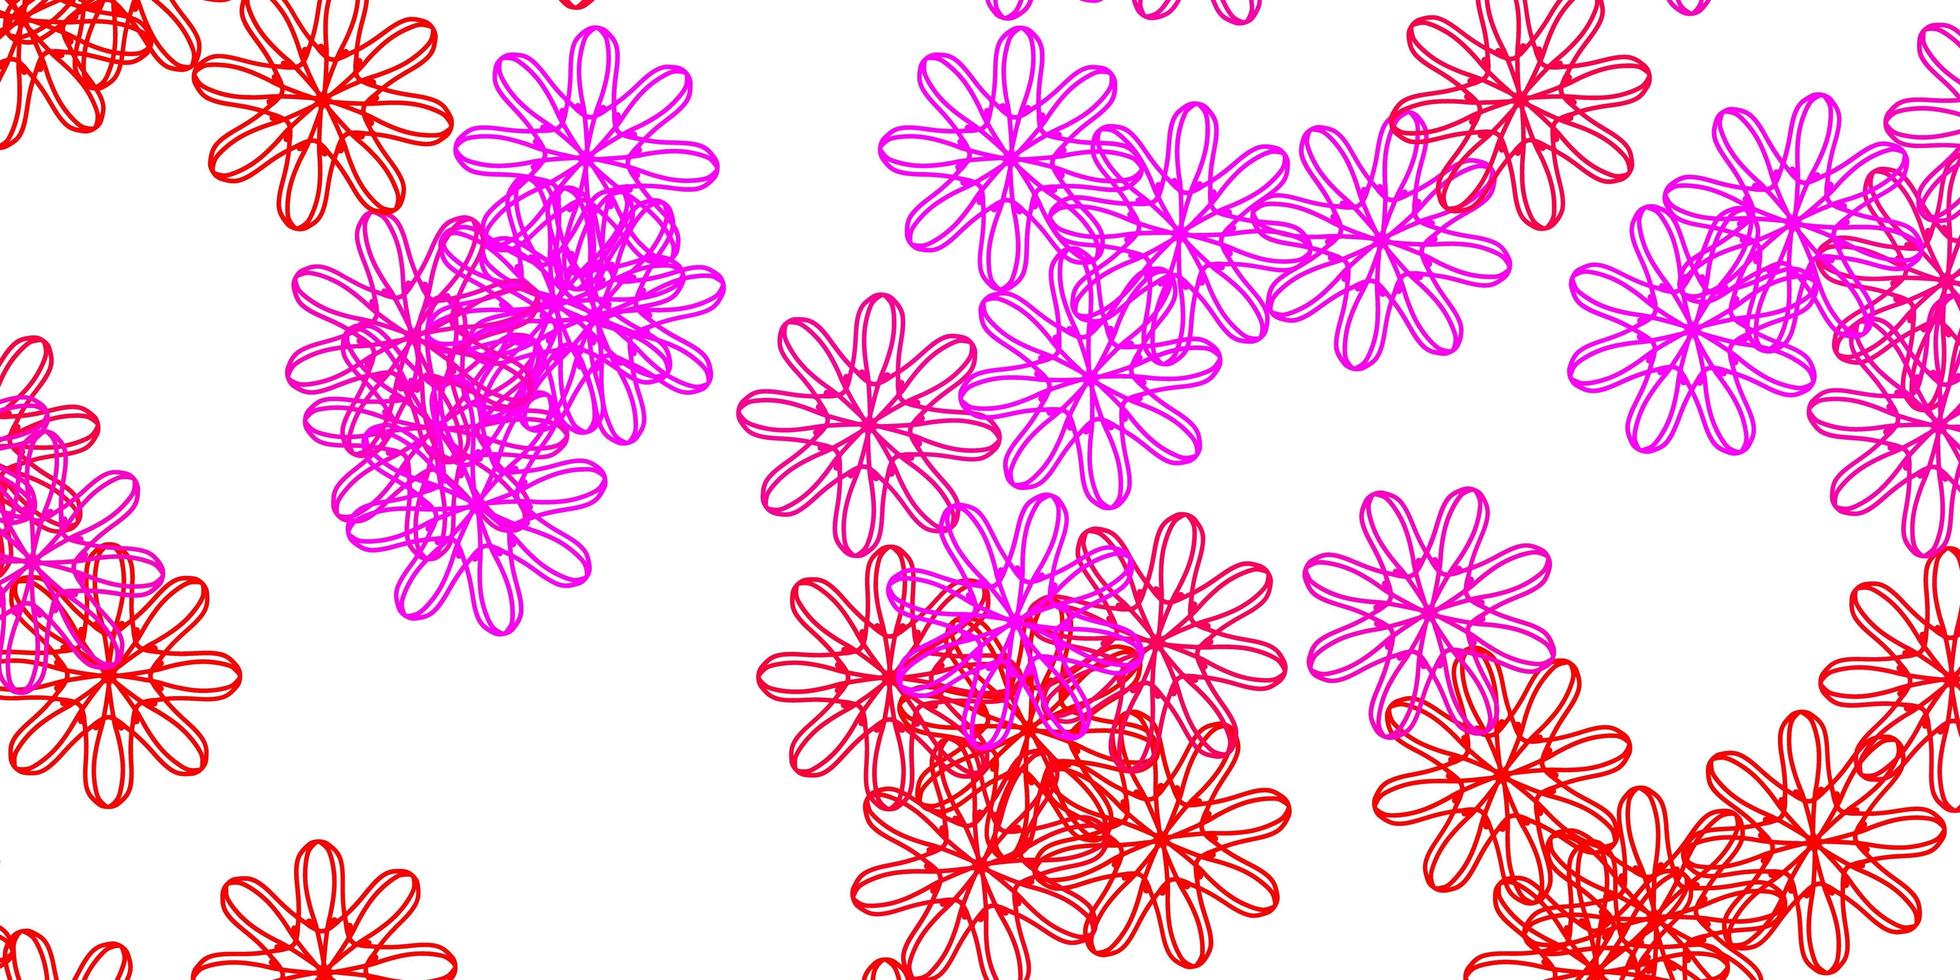 arte natural do vetor rosa claro com flores.